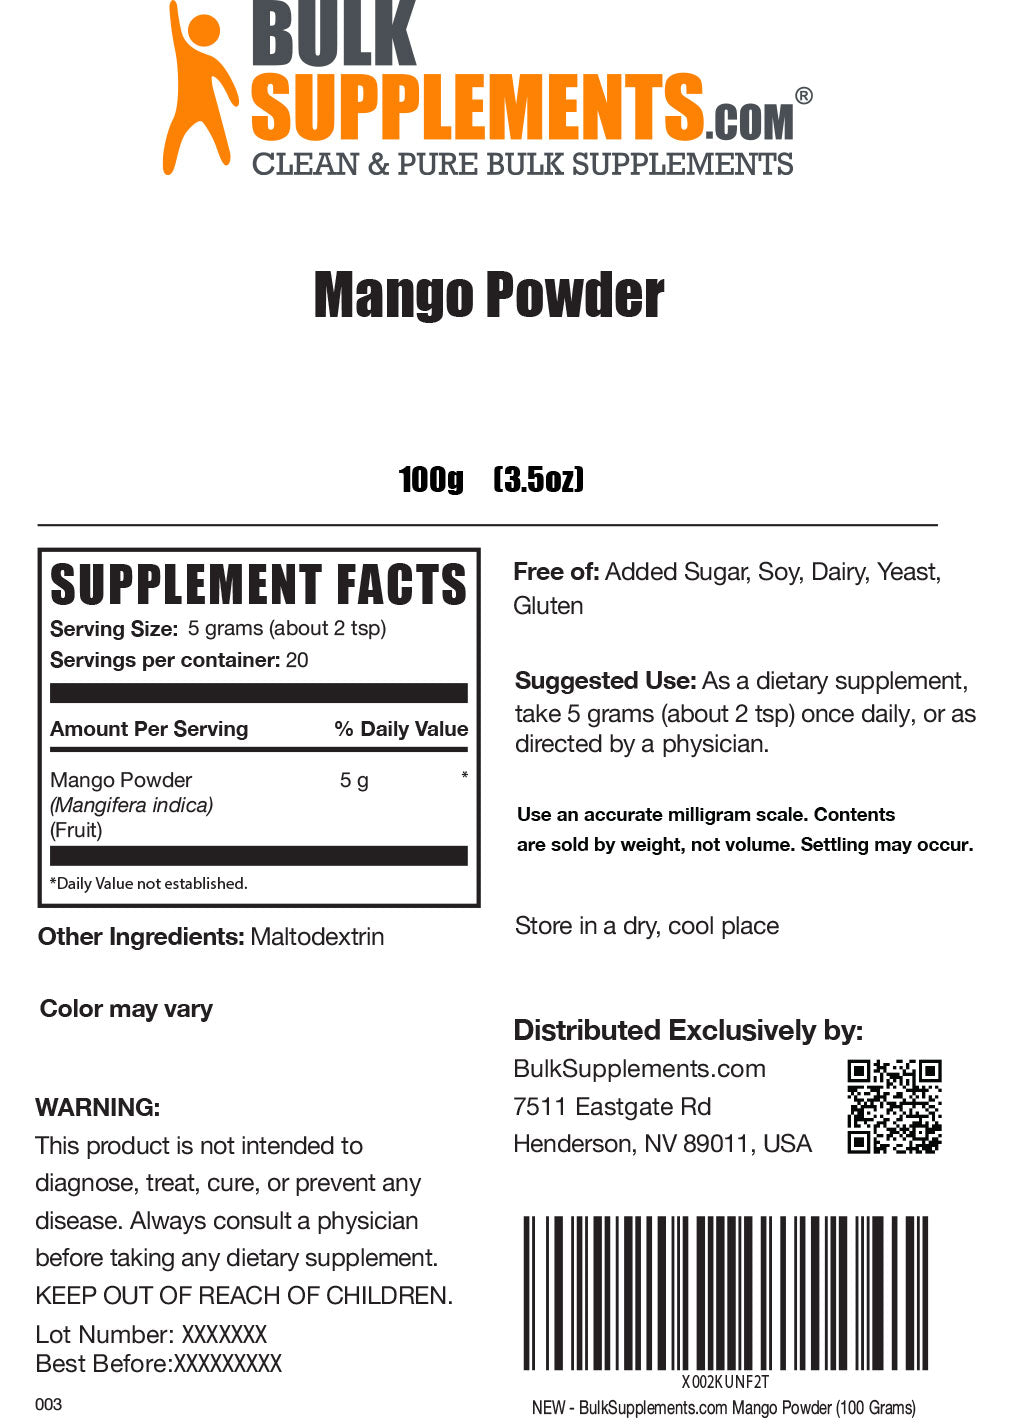 Mango Powder Supplement Facts